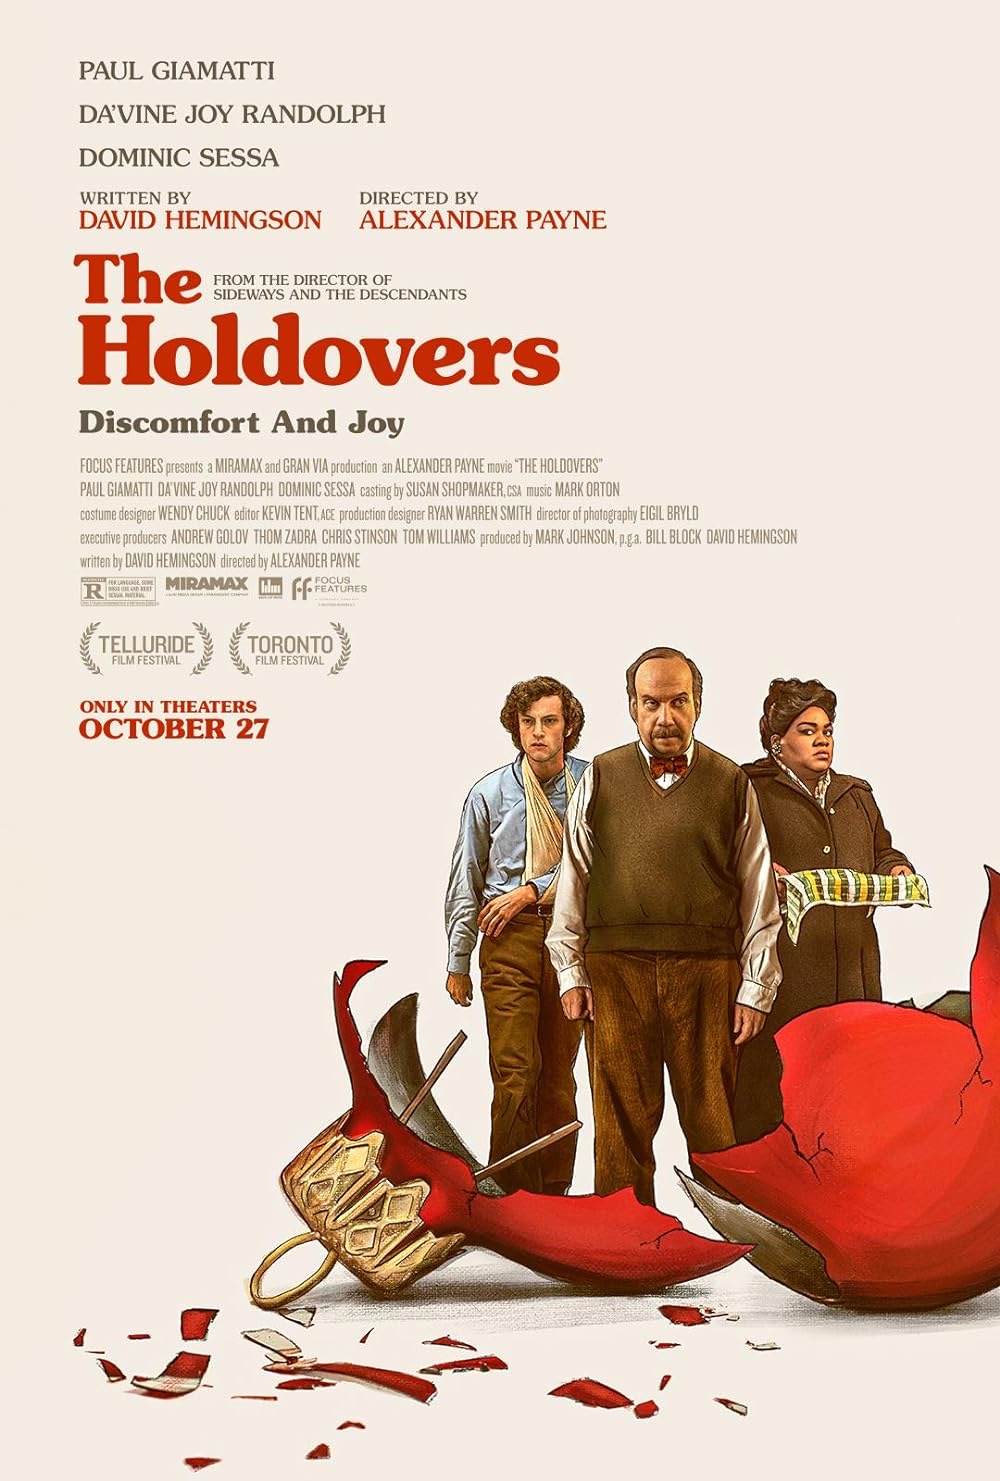 استديوهات ميراماكس مملوكة من قبل beIN تحت في بتألق فيلم ' The Holdovers ' خلال توزيع جوائز الأوسكار .